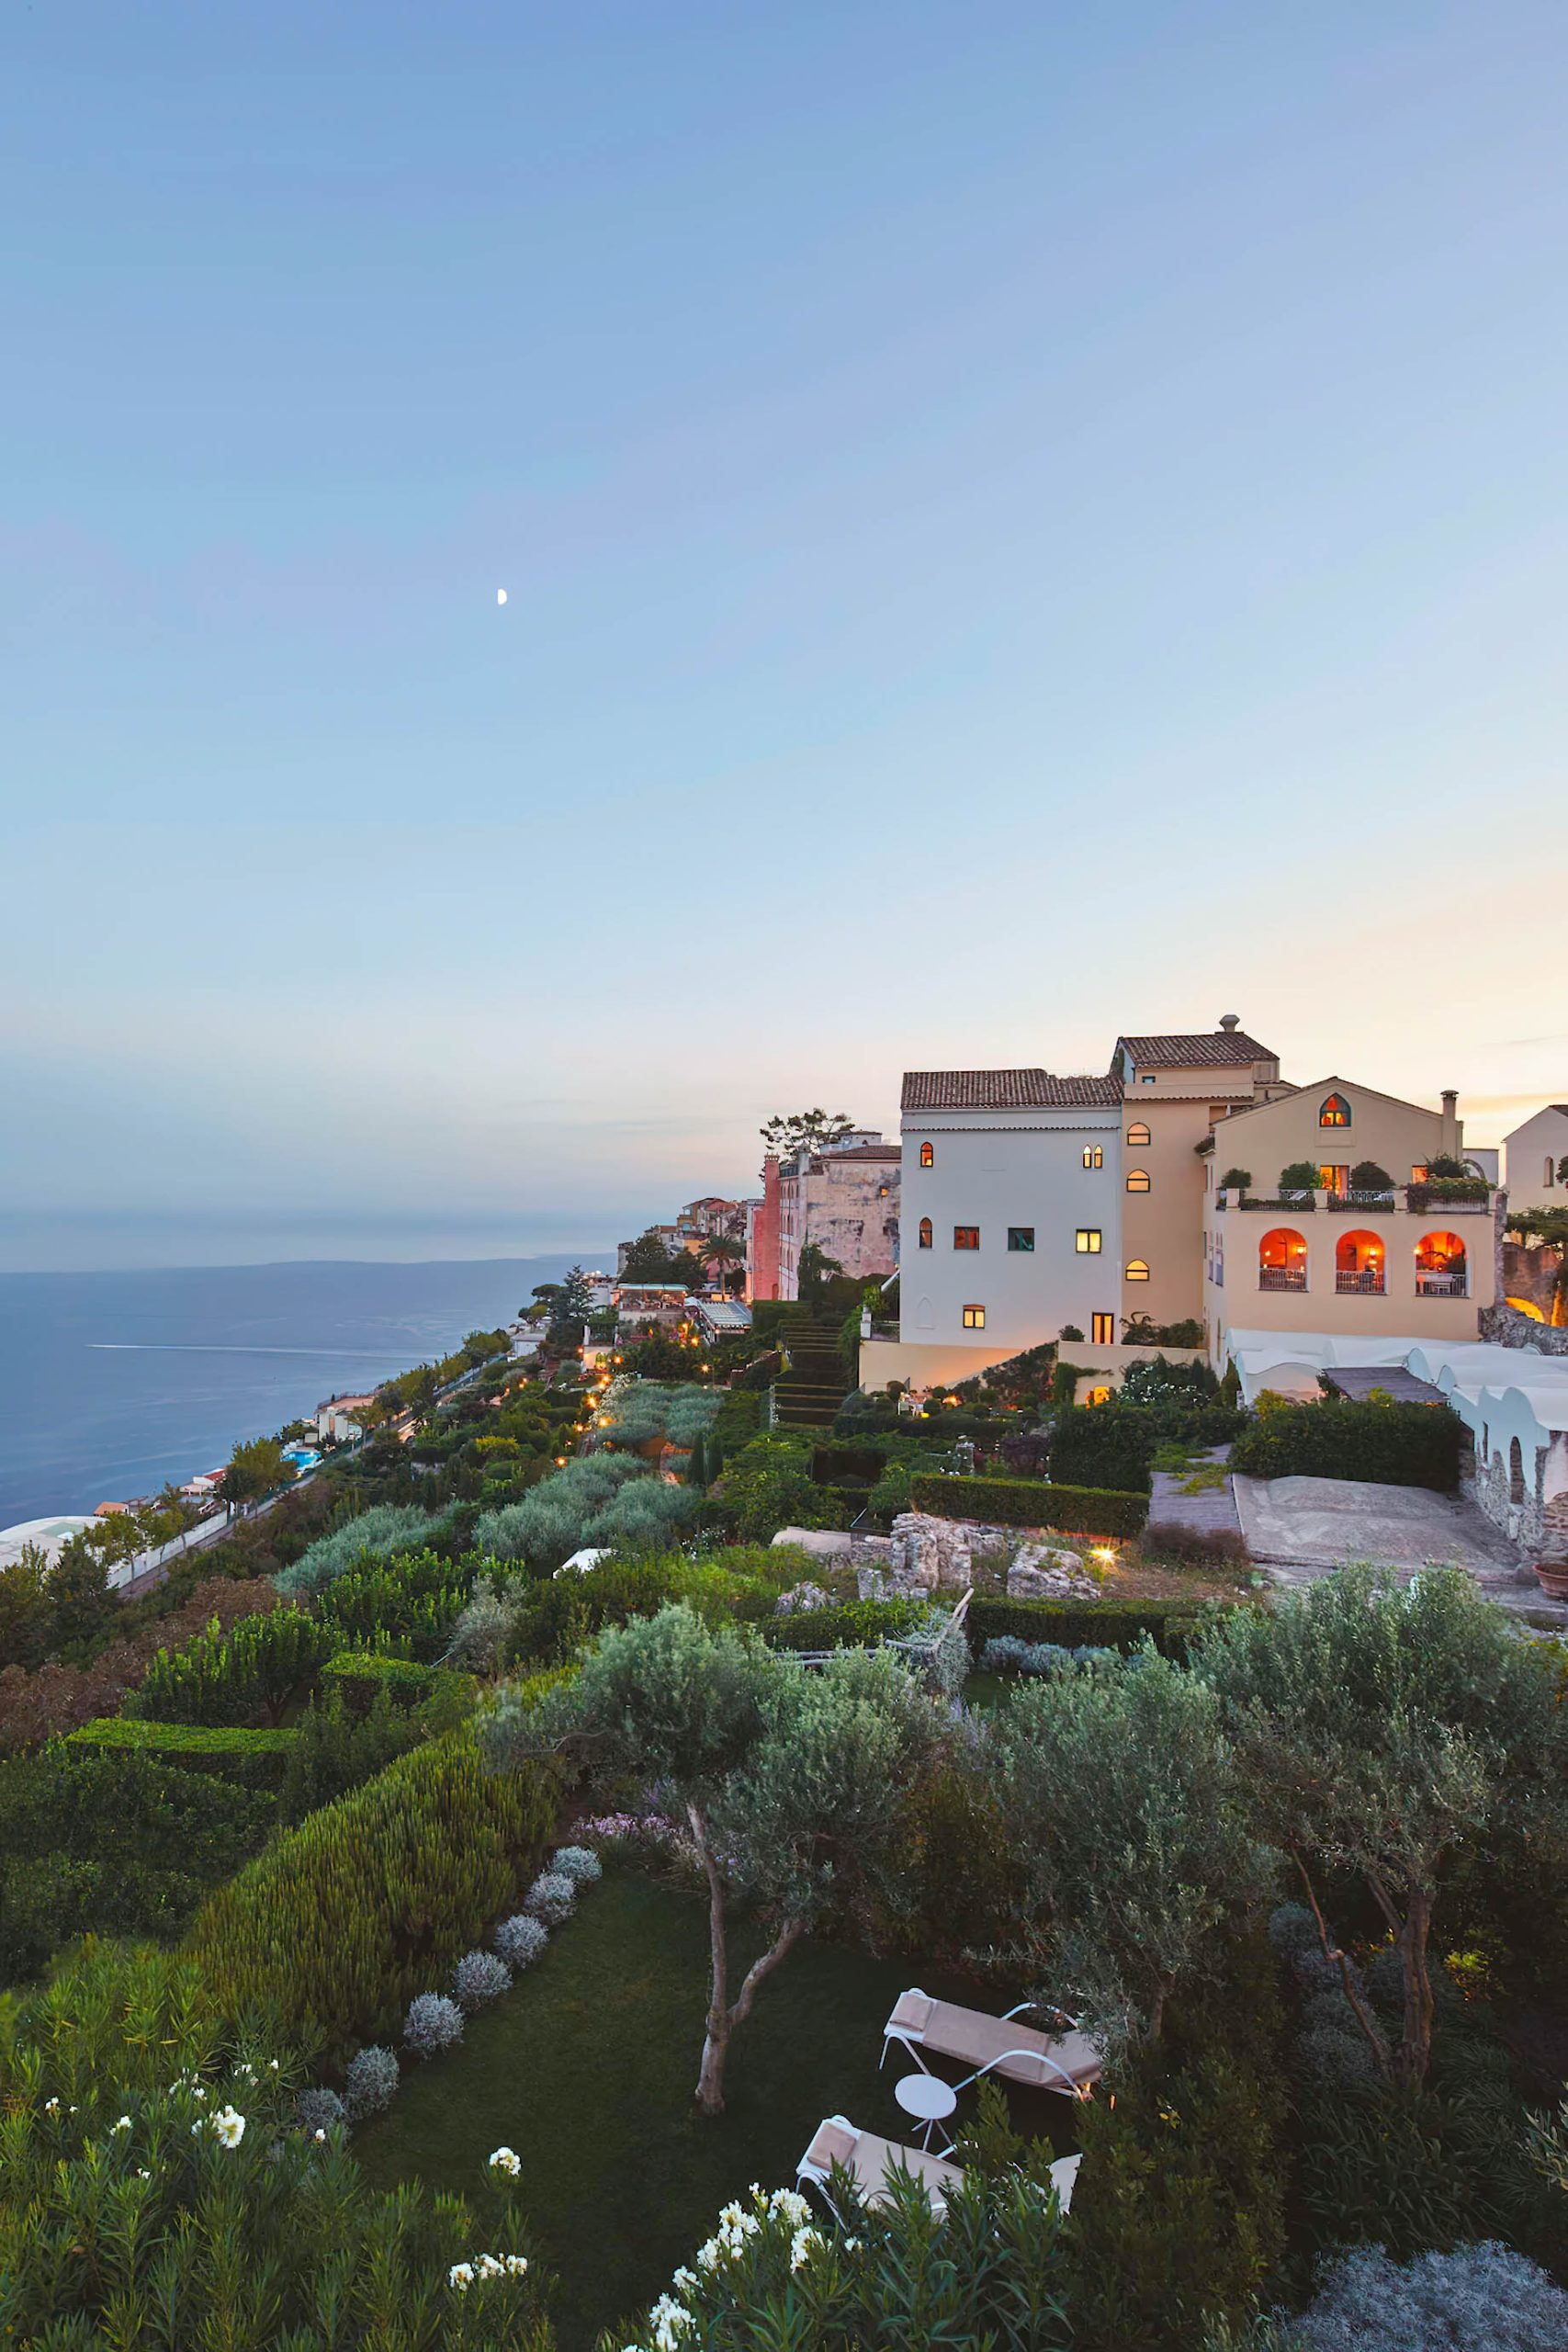 Caruso, A Belmond Hotel, Amalfi Coast - Ravello, Italy - Hotel View